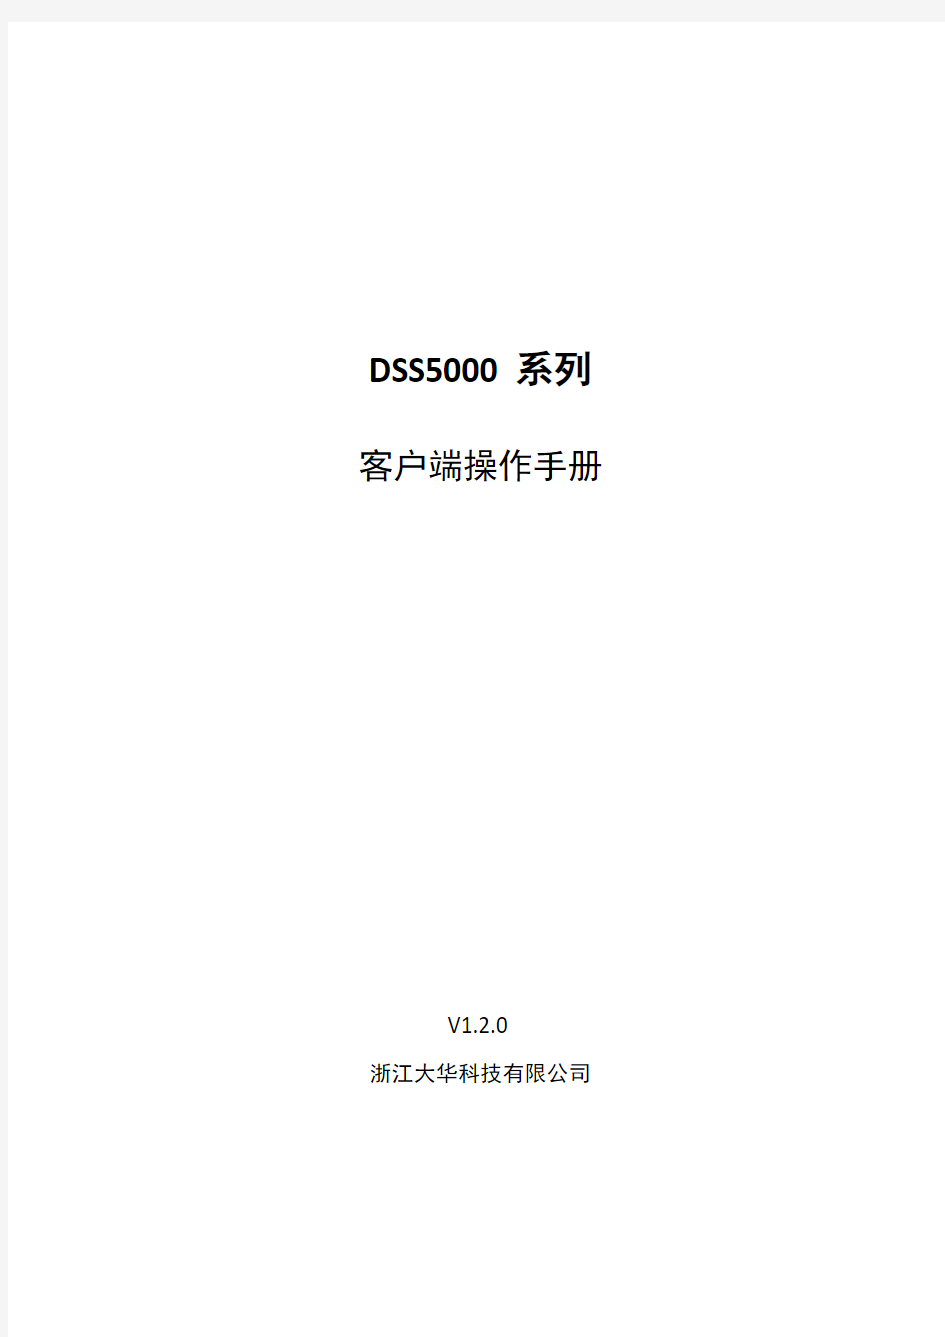 大华DSS5000系列-客户端操作手册-